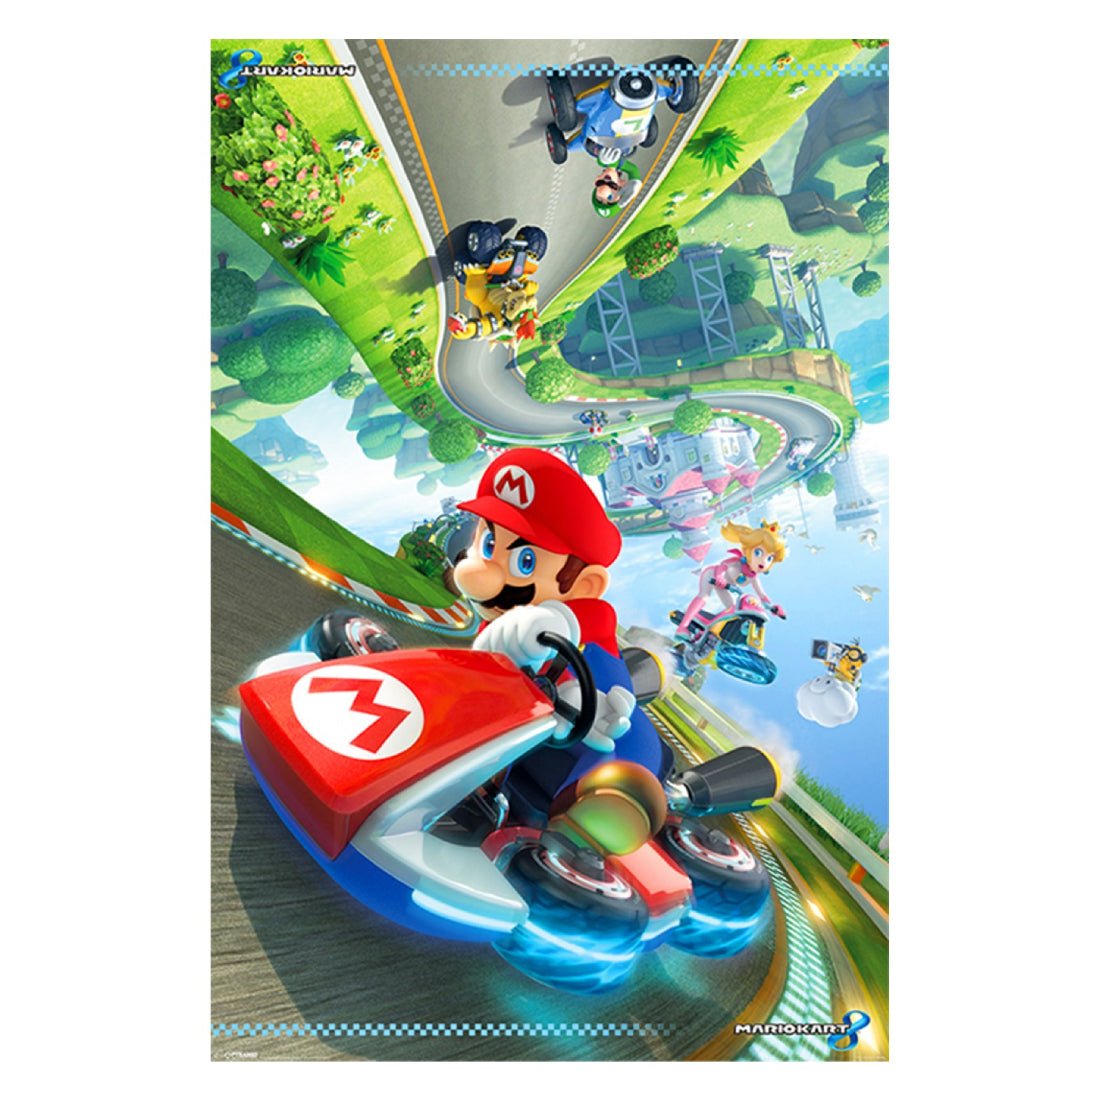 Super Mario - Mario Kart 8 Maxi Poster - بوستر - Store 974 | ستور ٩٧٤